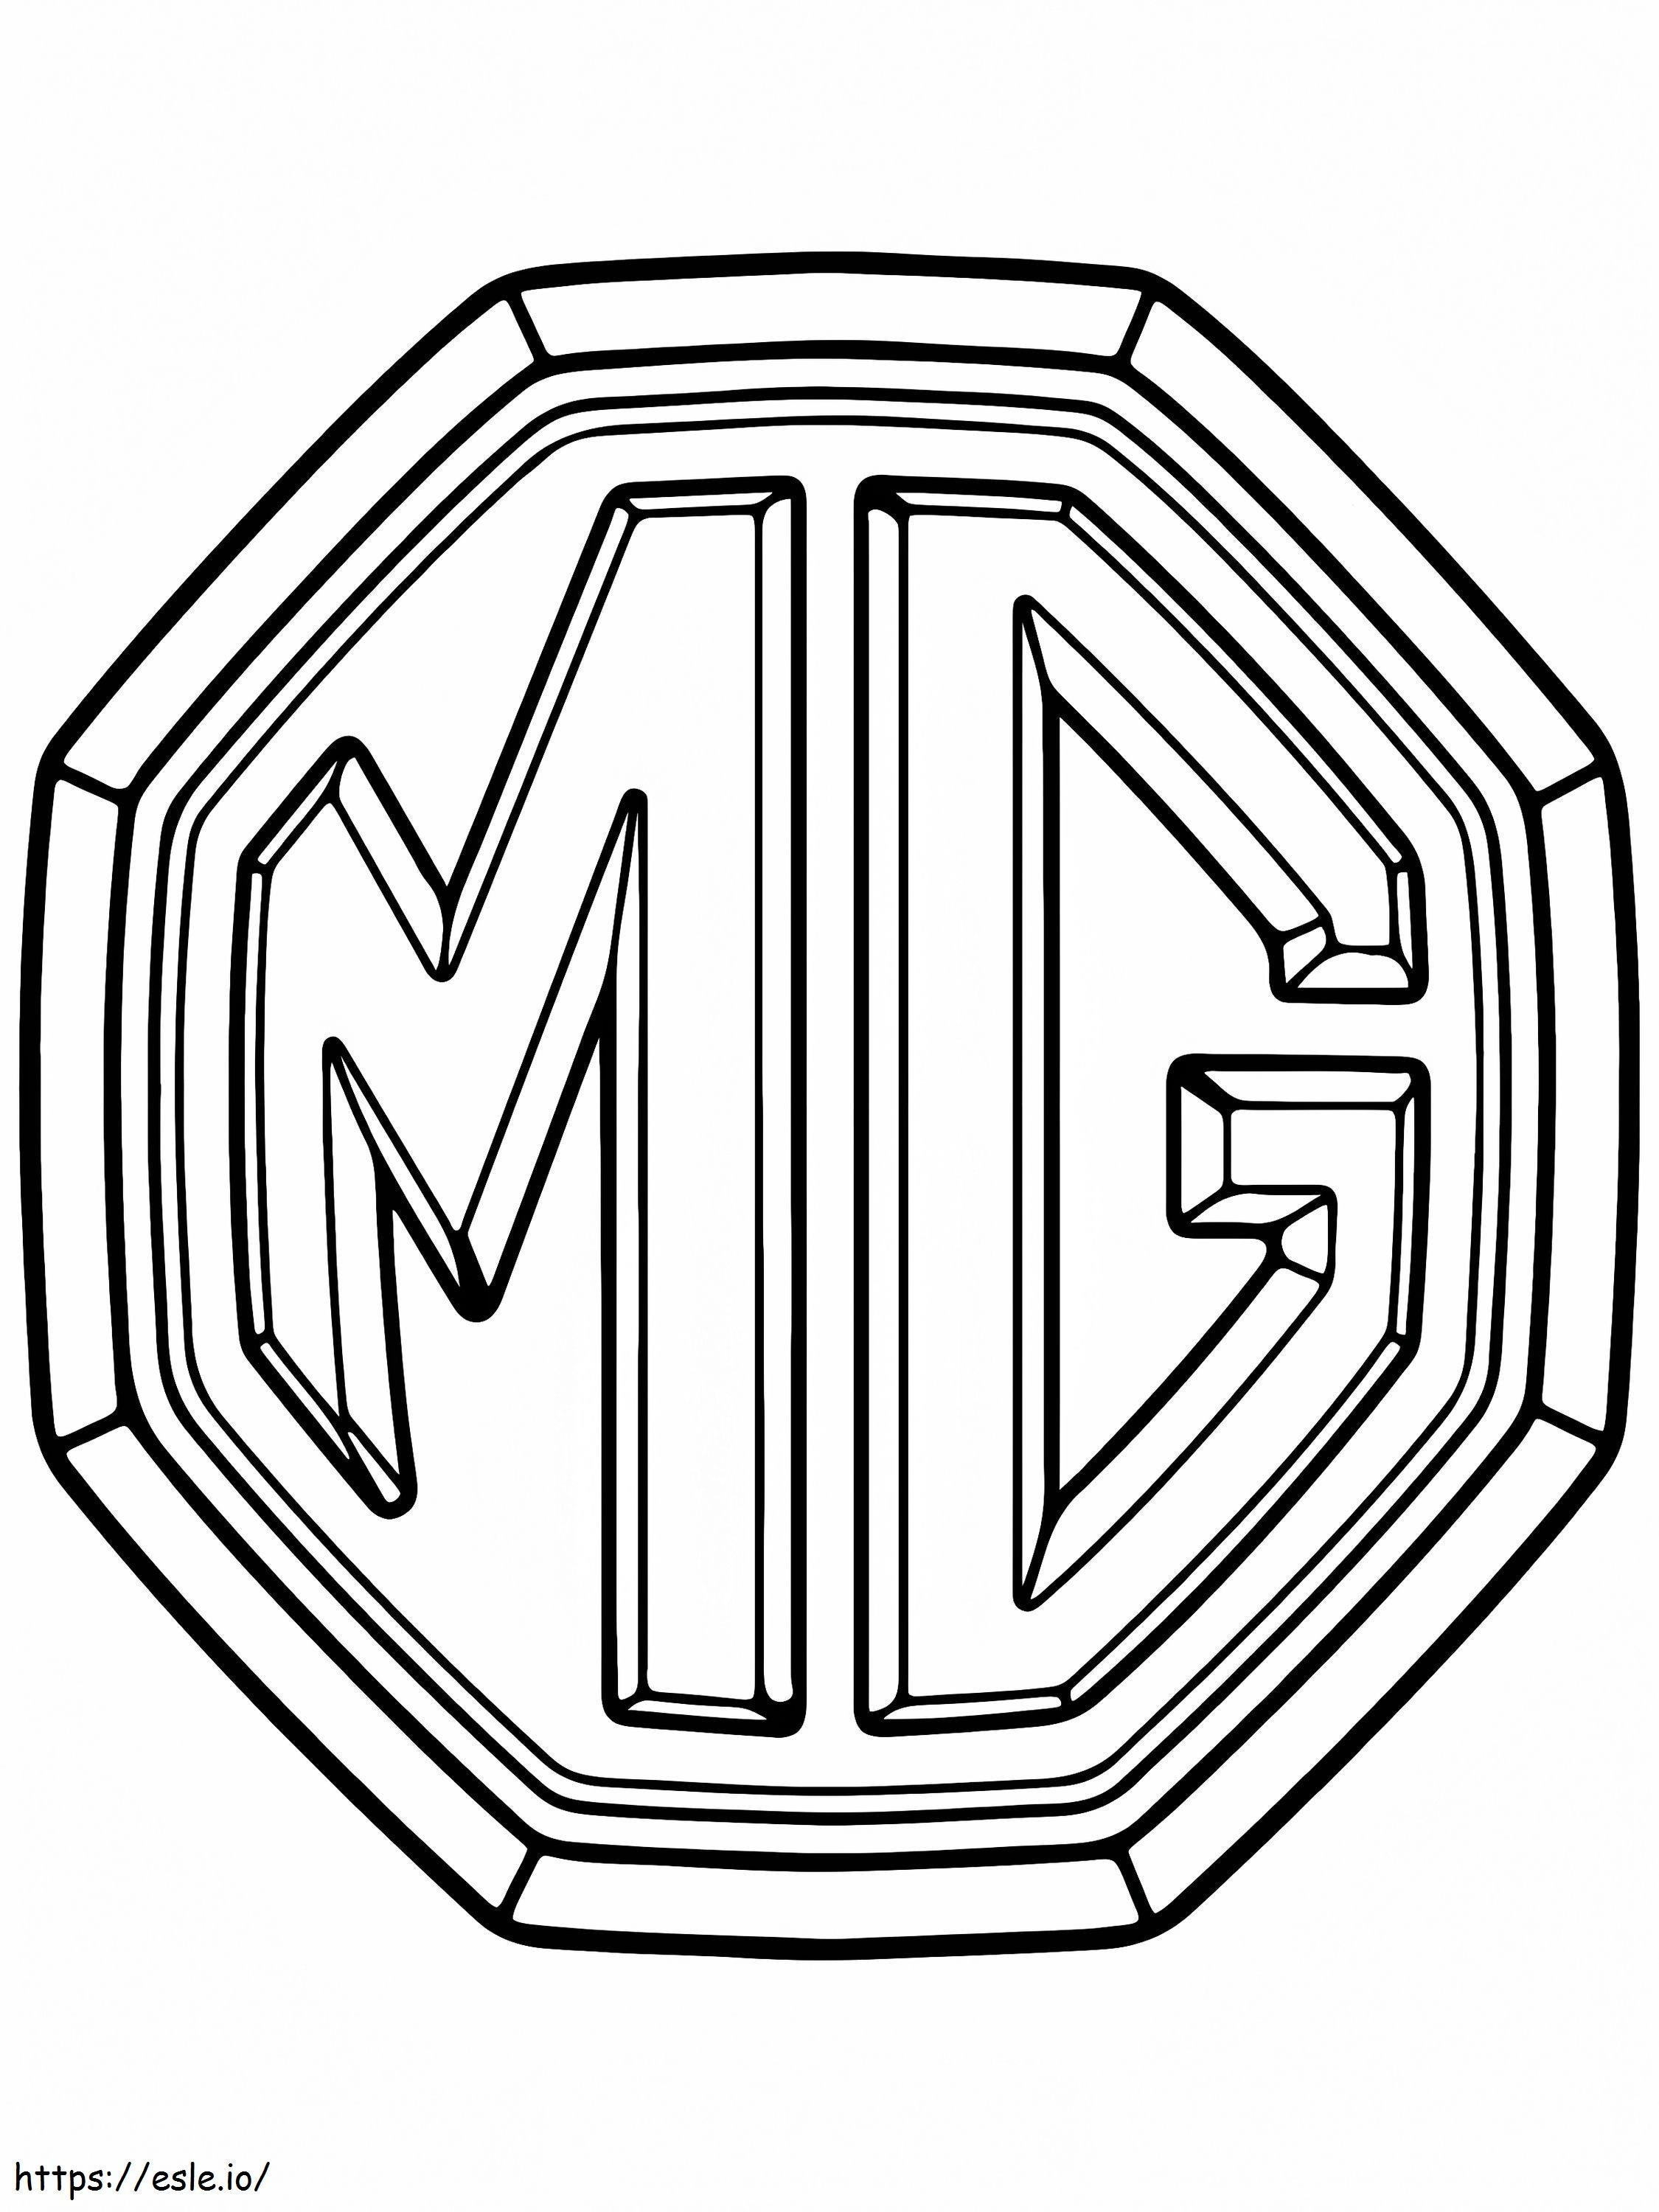 Logotipo Do Carro MG para colorir